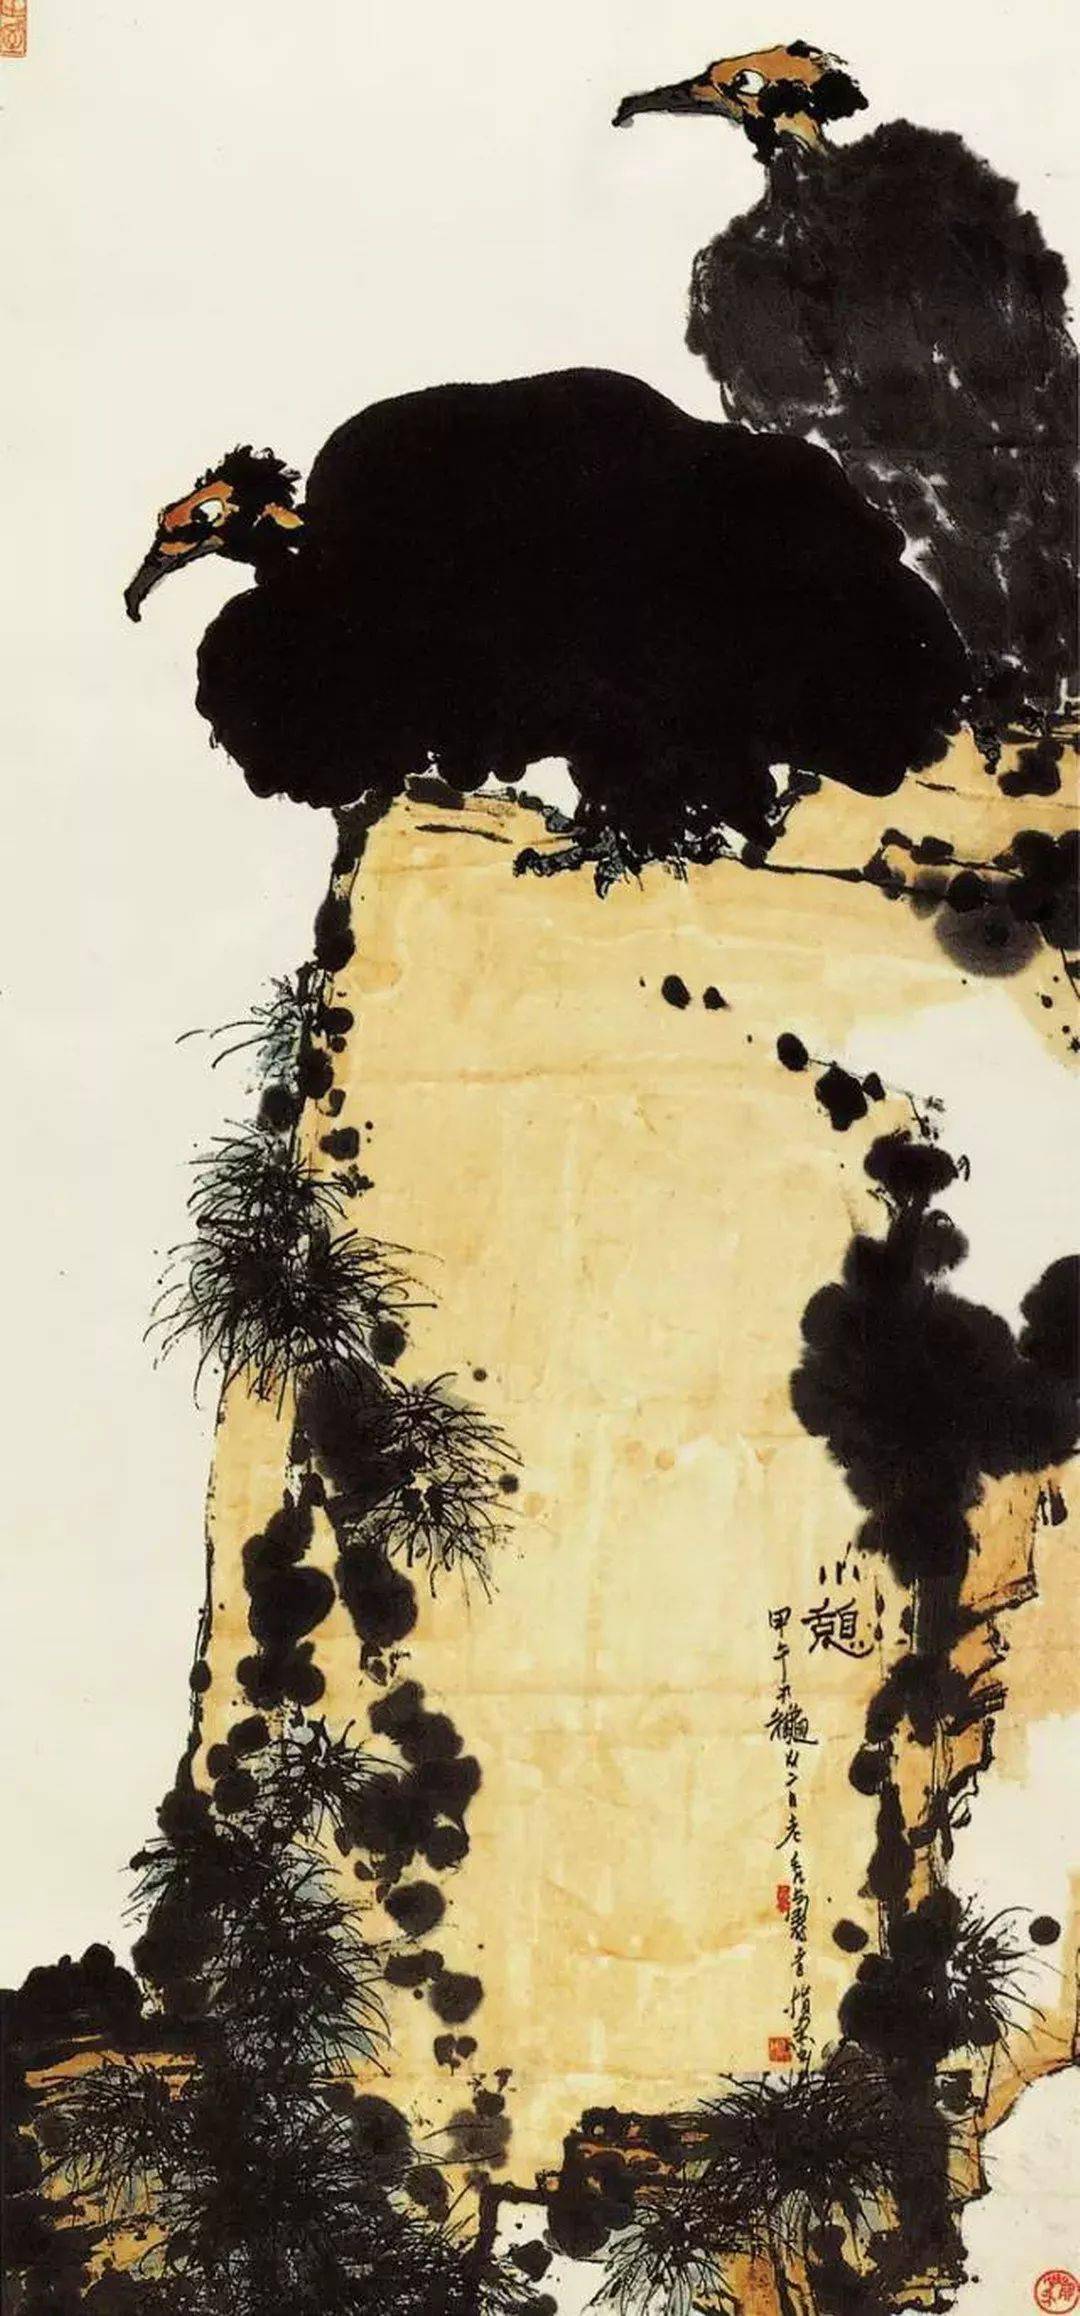 7cm 纸本水墨设色中国美术馆藏(碎片拼接)潘天寿《露气》1958年作